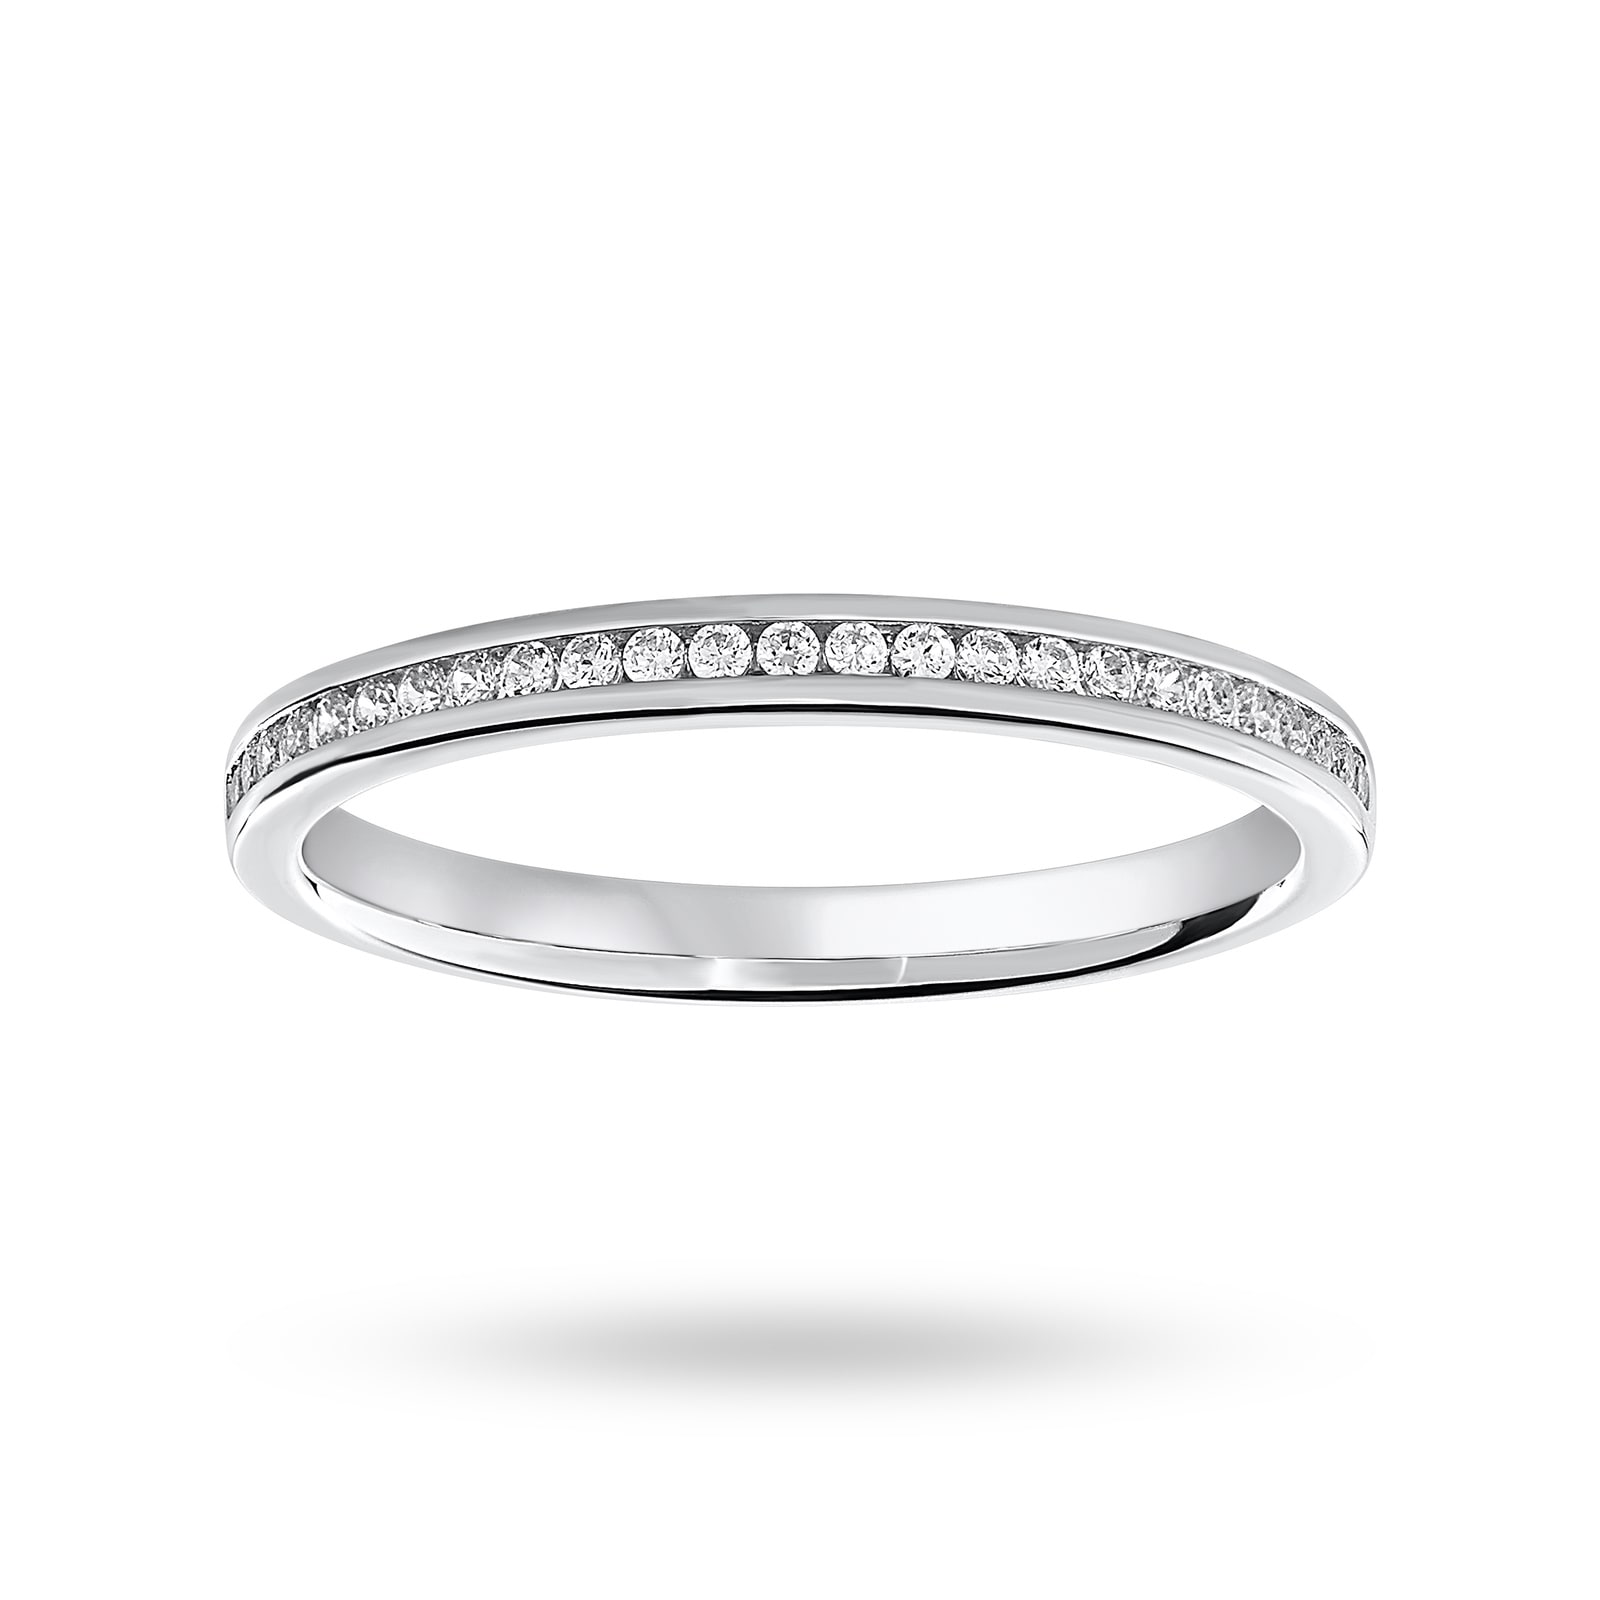 Platinum 012 Carat Brilliant Cut Half Eternity Ring Ring Size P